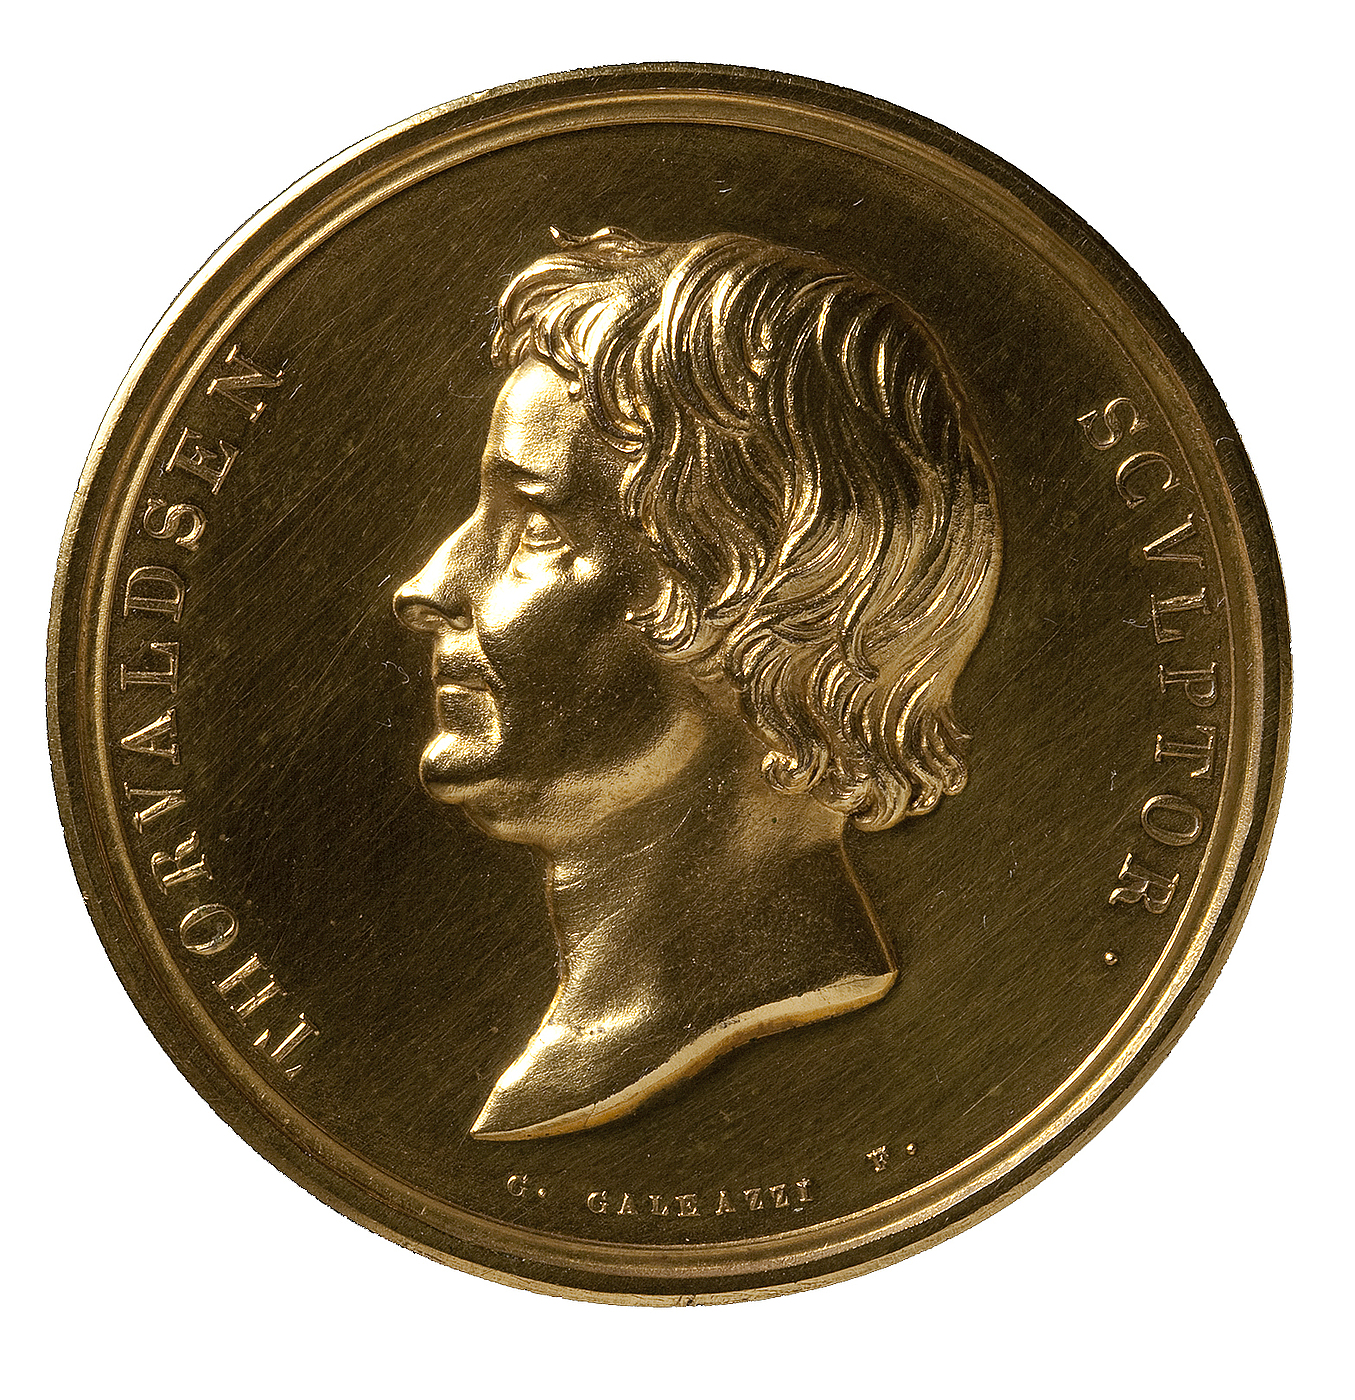 Medaljens forside: Portræt af Thorvaldsen